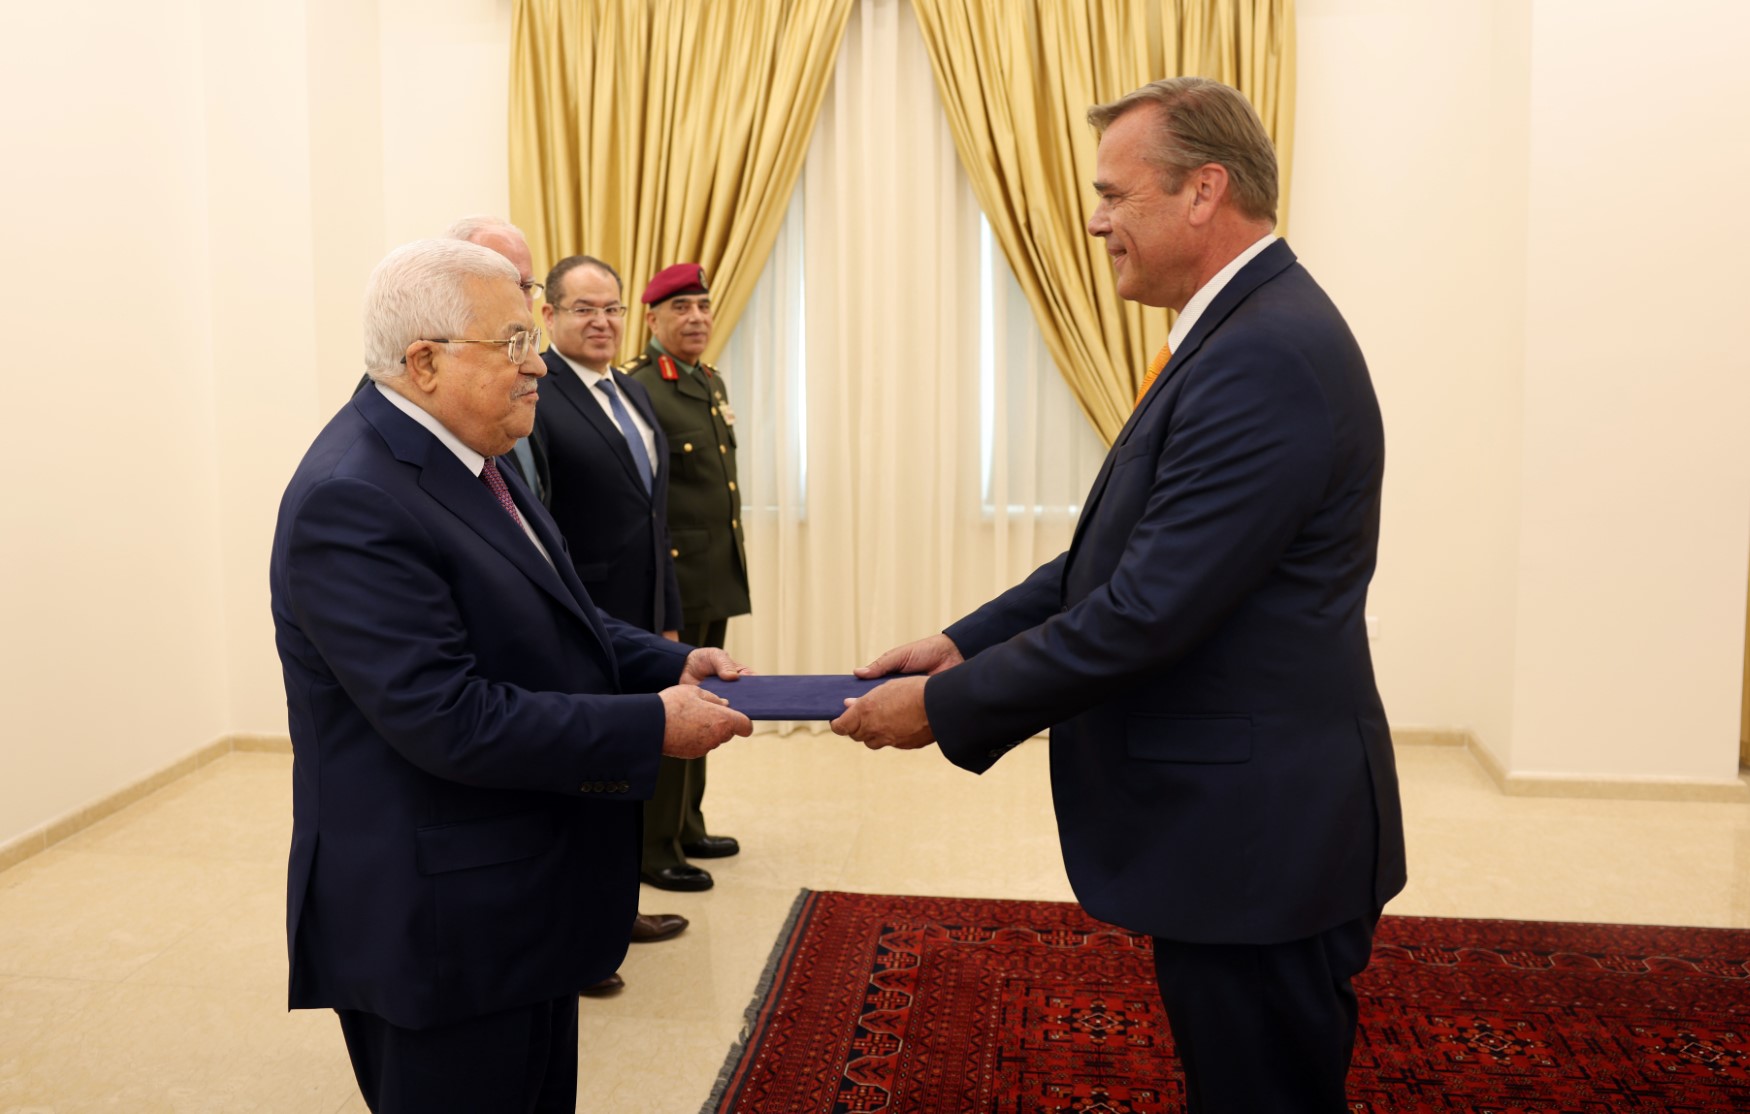 الرئيس عباس يتقبل أوراق اعتماد رئيس مكتب تمثيل هولندا لدى فلسطين